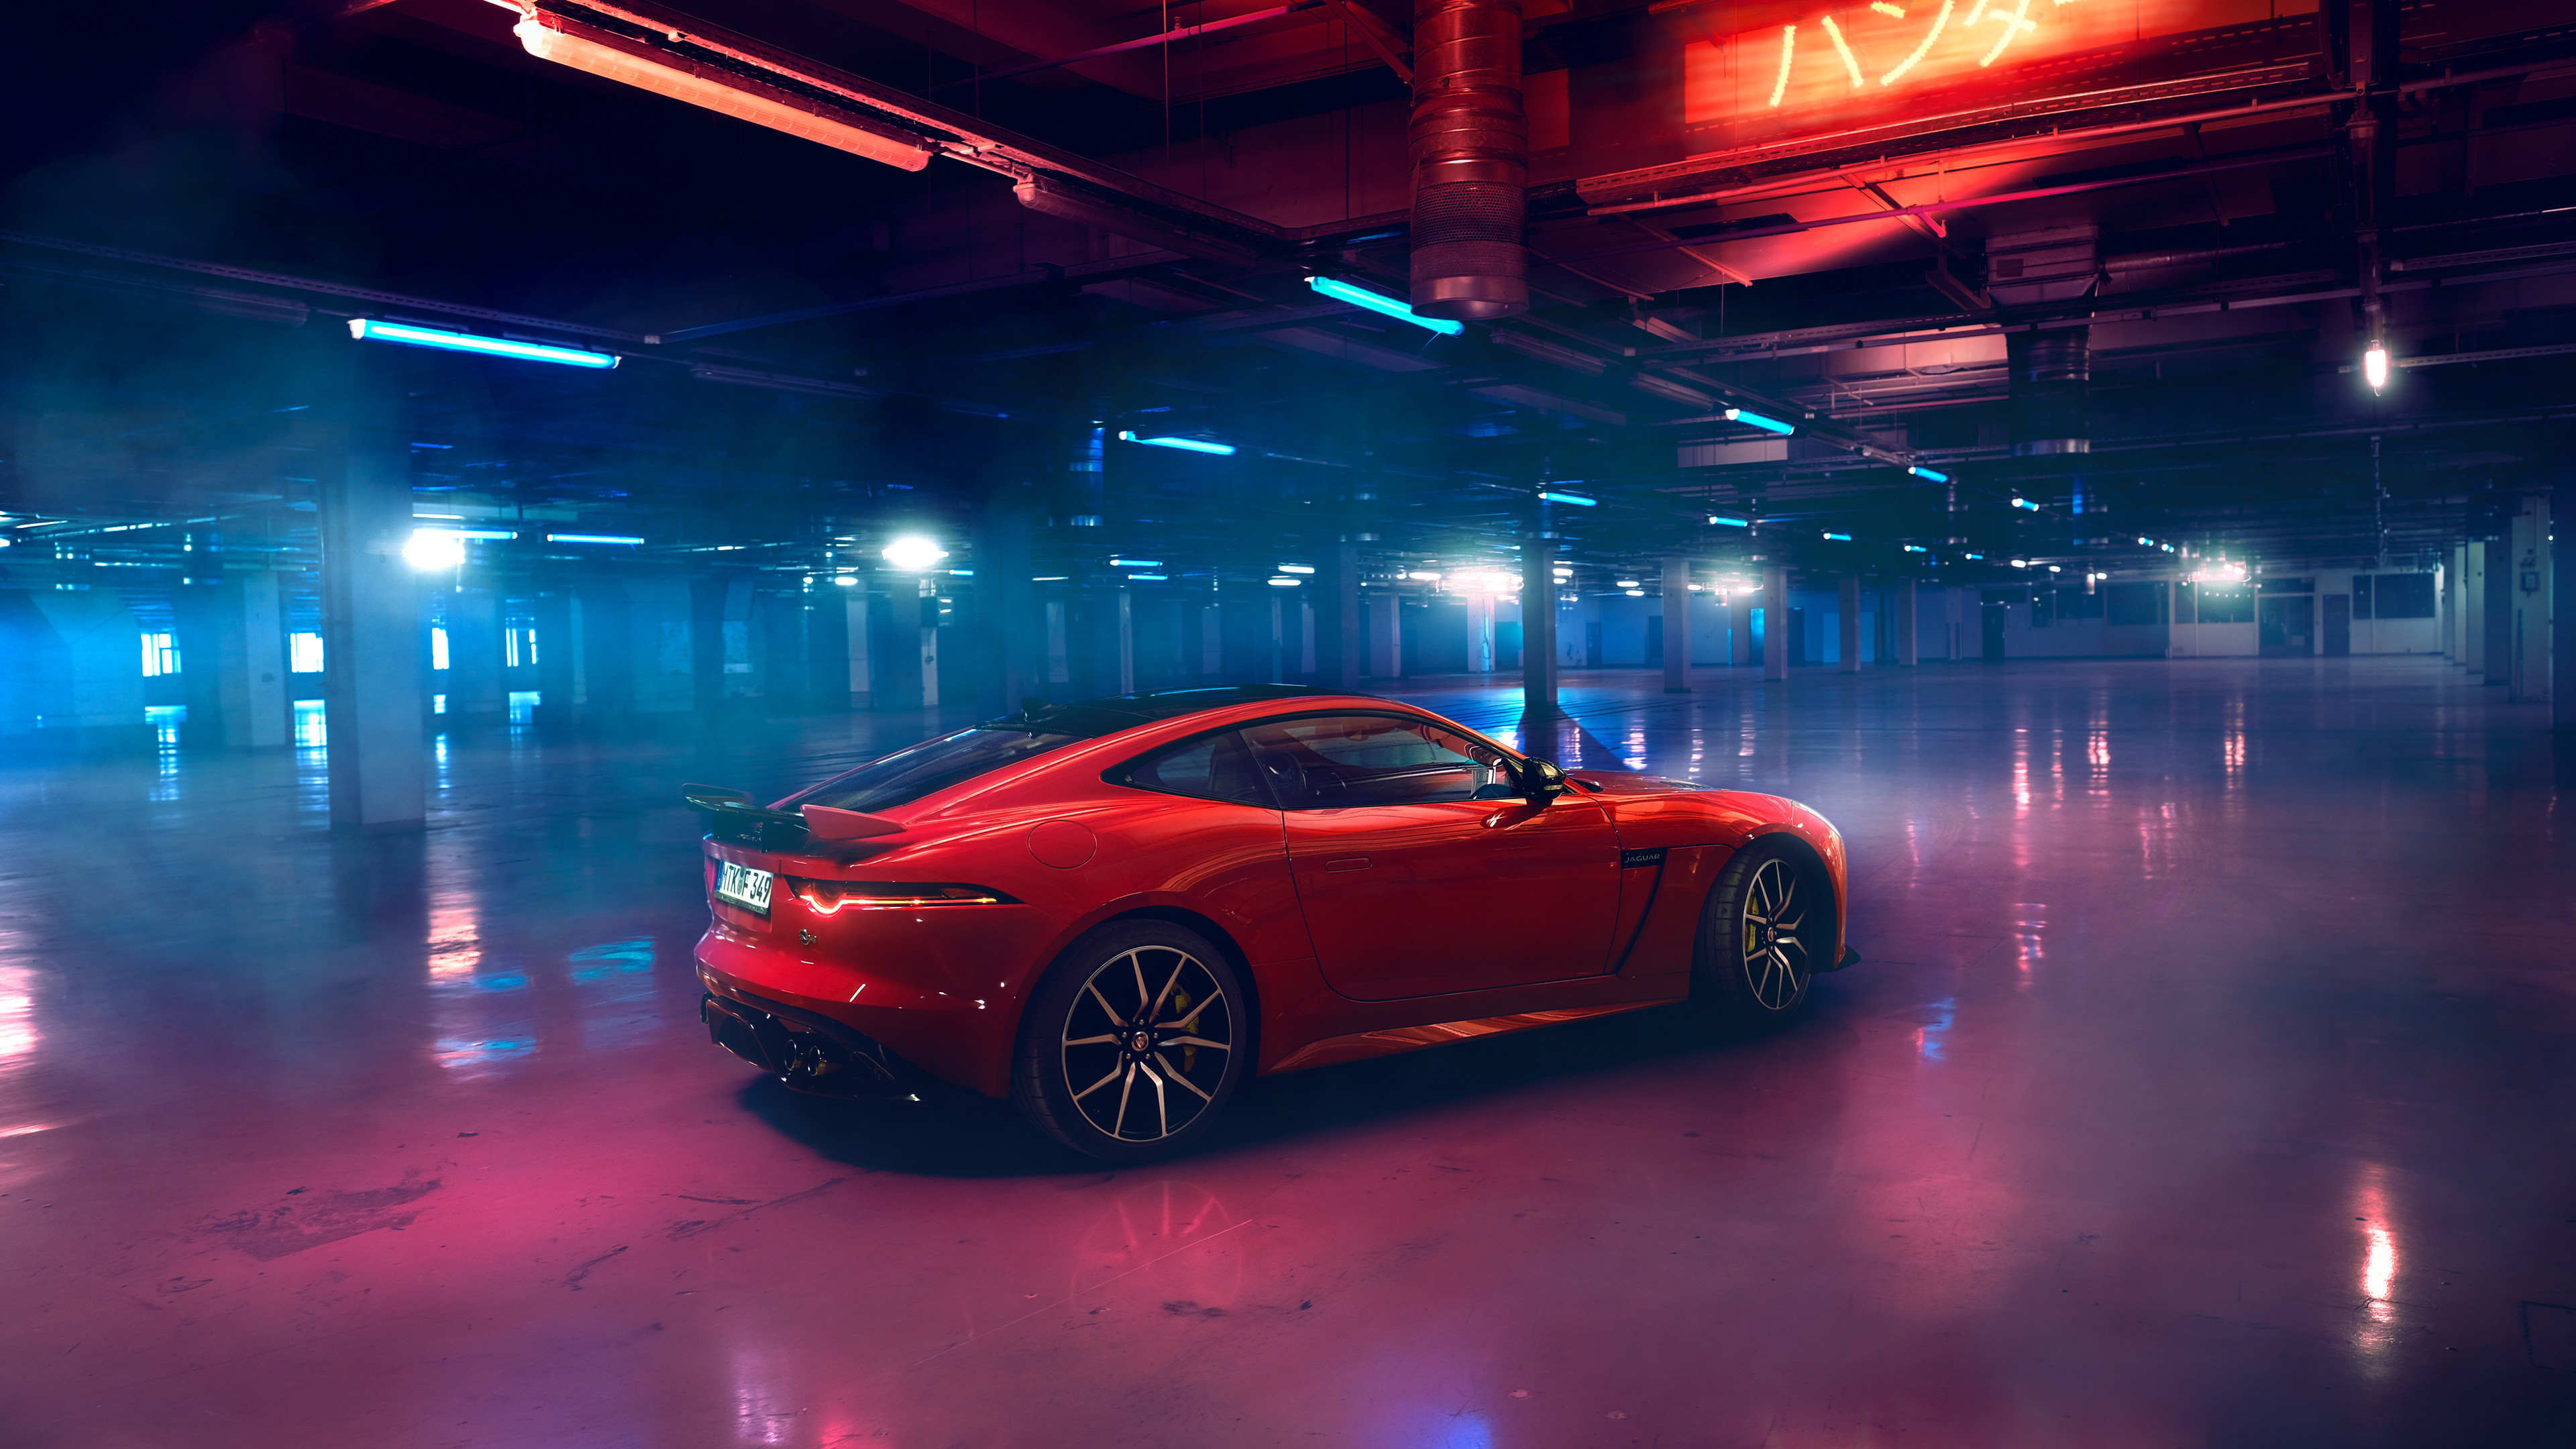 Xem qua hình ảnh của chiếc Jaguar F-Type nguyên bản của chúng tôi để cảm nhận được sự tinh tế và sức mạnh của chiếc xe sang trọng này. Với thiết kế đẹp mắt và đầy phong cách, chiếc xe này sẽ chắc chắn thu hút được sự chú ý của bạn. 